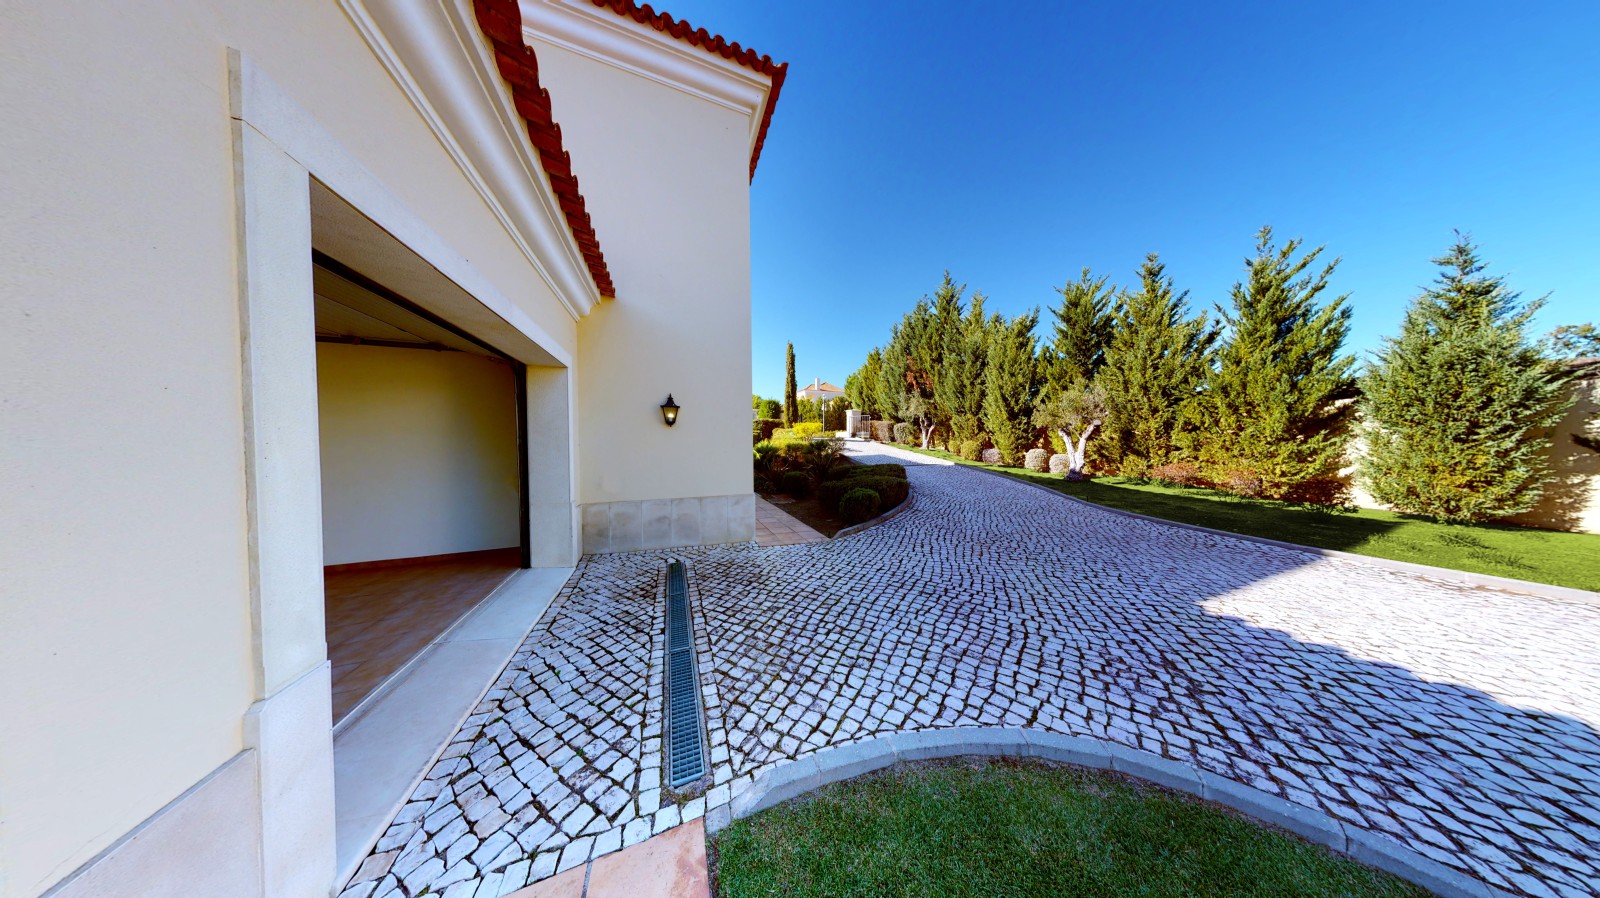 4 Bedroom Villa with pool for sale in Vila Real de Santo Antonio, Algarve_215723